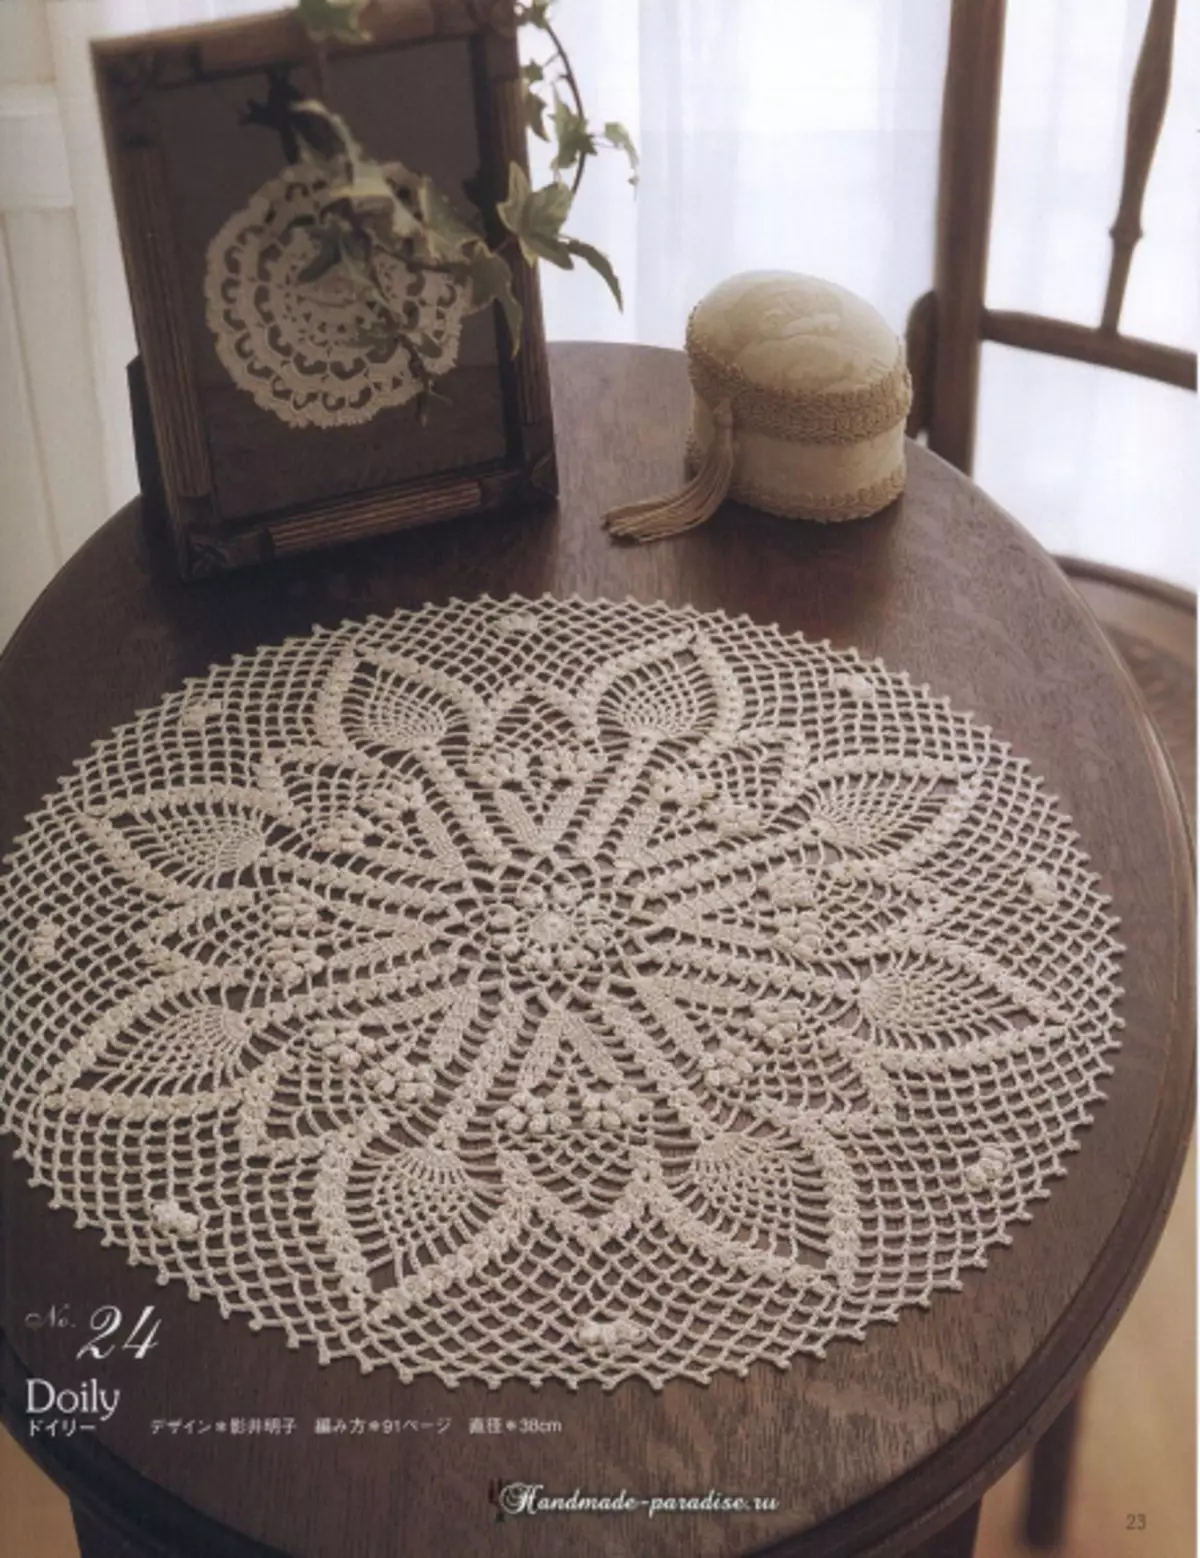 মার্জিত Crochet লেইস 2019 ম্যাগাজিন - Napkins এবং Crochet Tablecloths